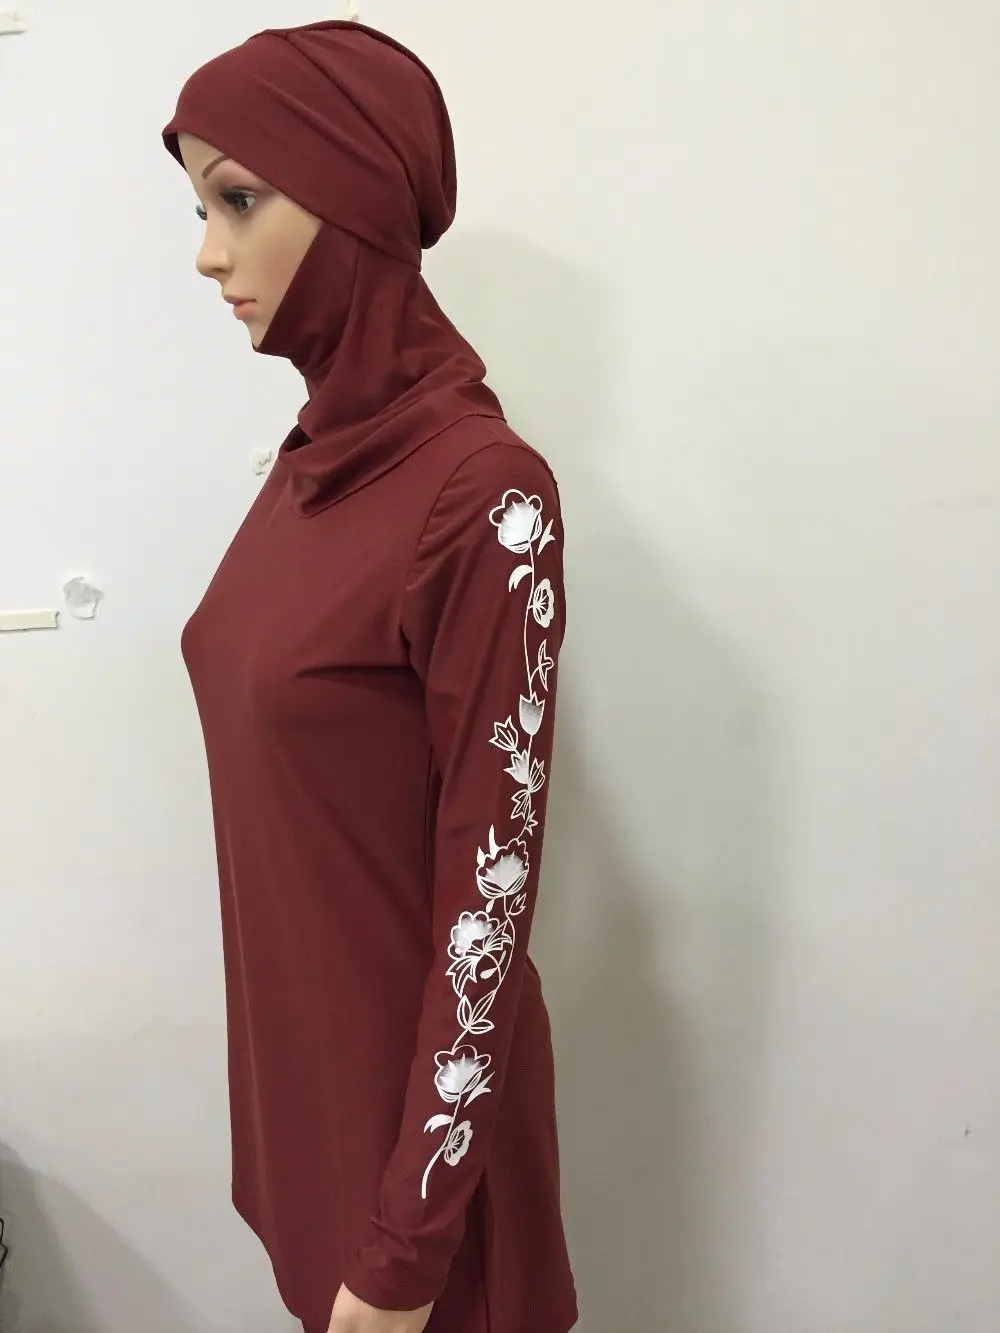 Большой размер, Женский исламский купальный костюм из двух частей, мусульманский купальный костюм с полным покрытием, костюмы для серфинга, maillot de bain musulman